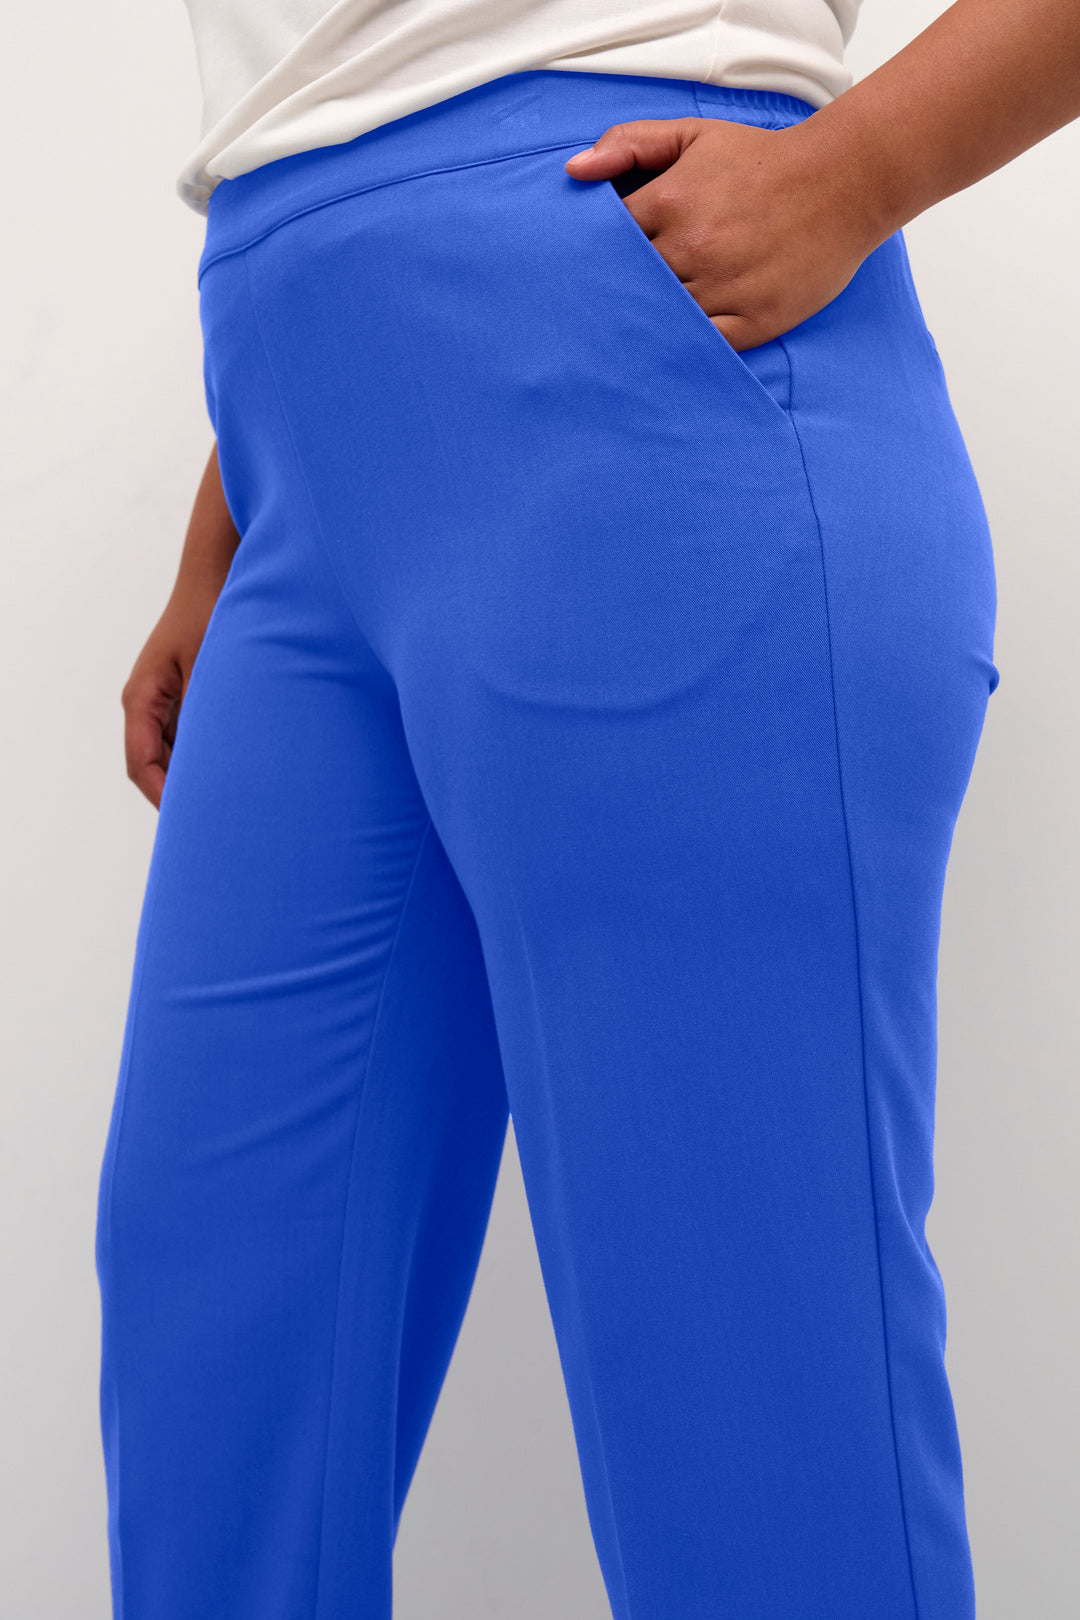 blauwe broek - kaffe curve - - grote maten - dameskleding - kledingwinkel - herent - leuven